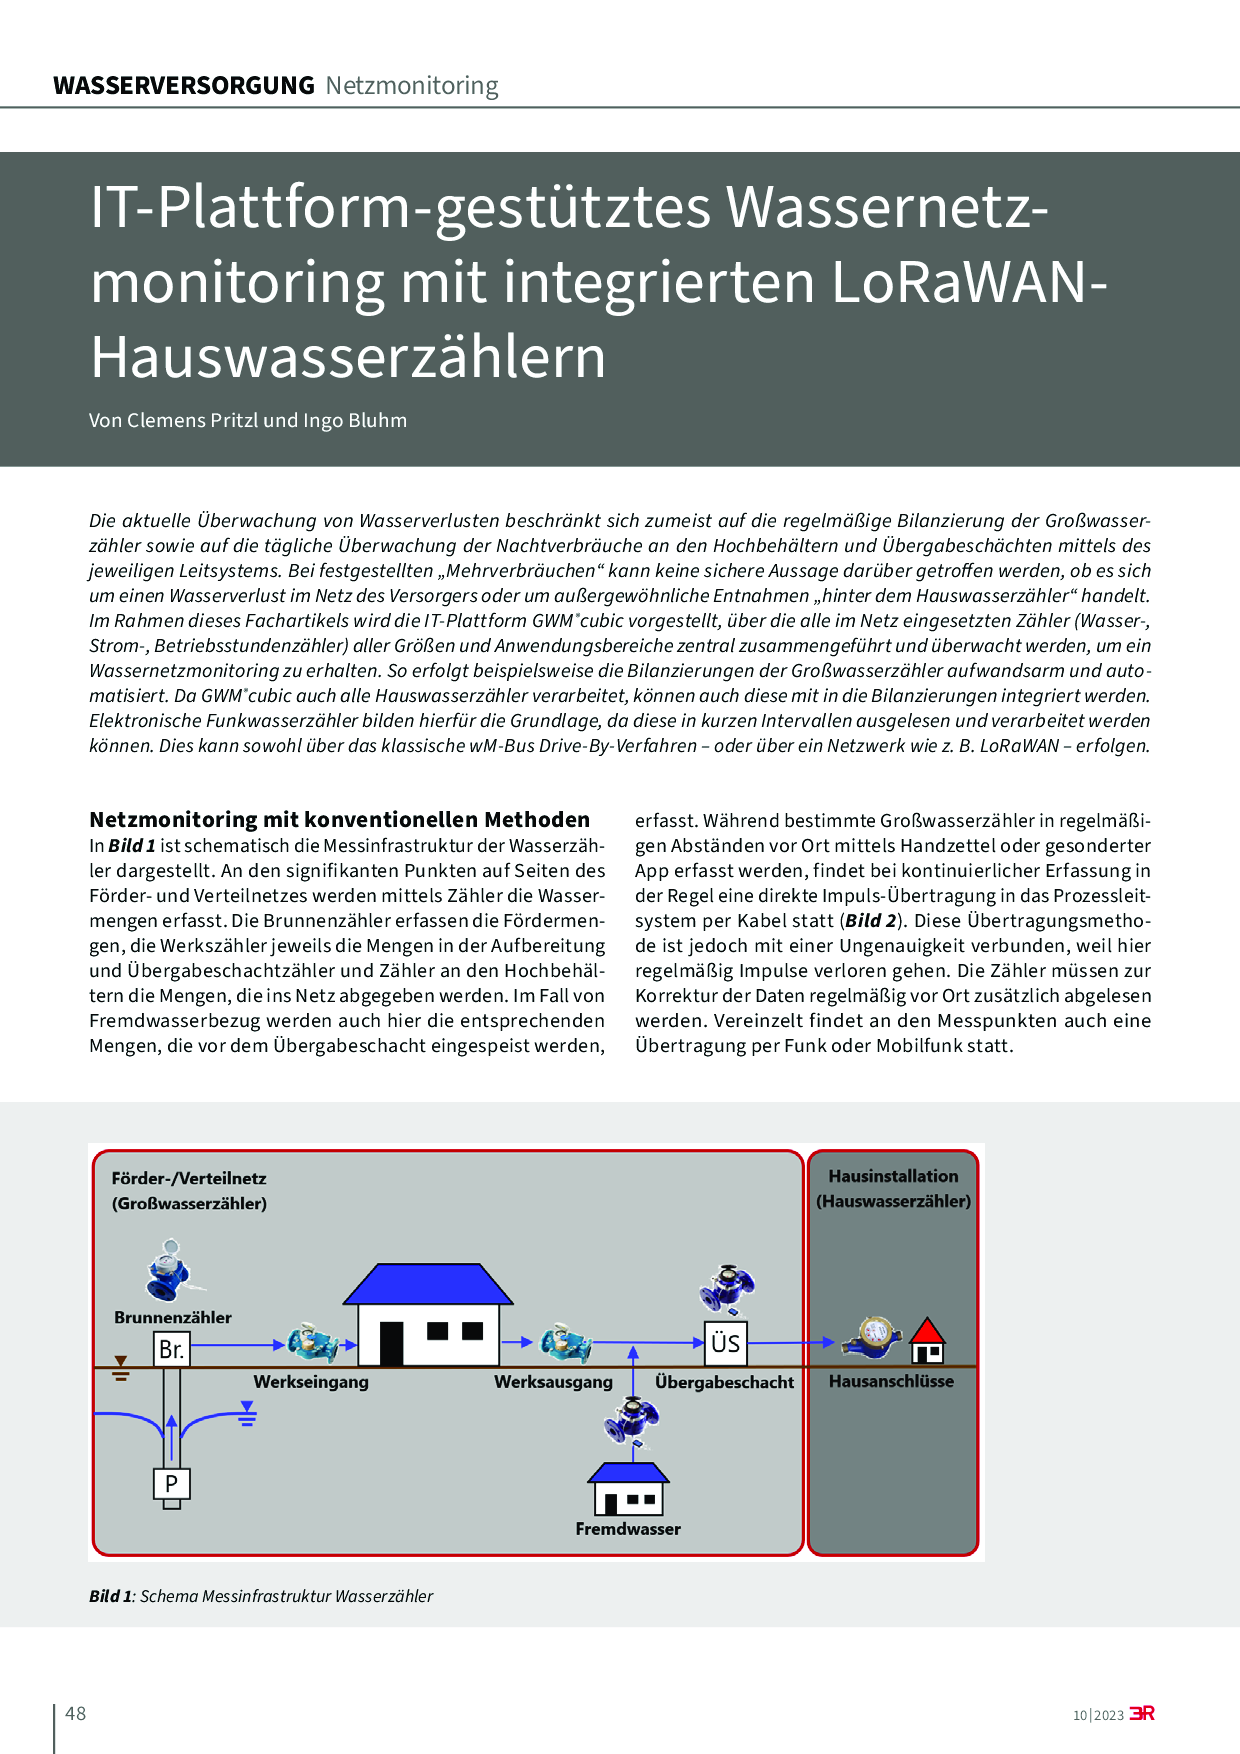 IT-Plattform-gestütztes Wassernetzmonitoring mit integrierten LoRaWANHauswasserzählern